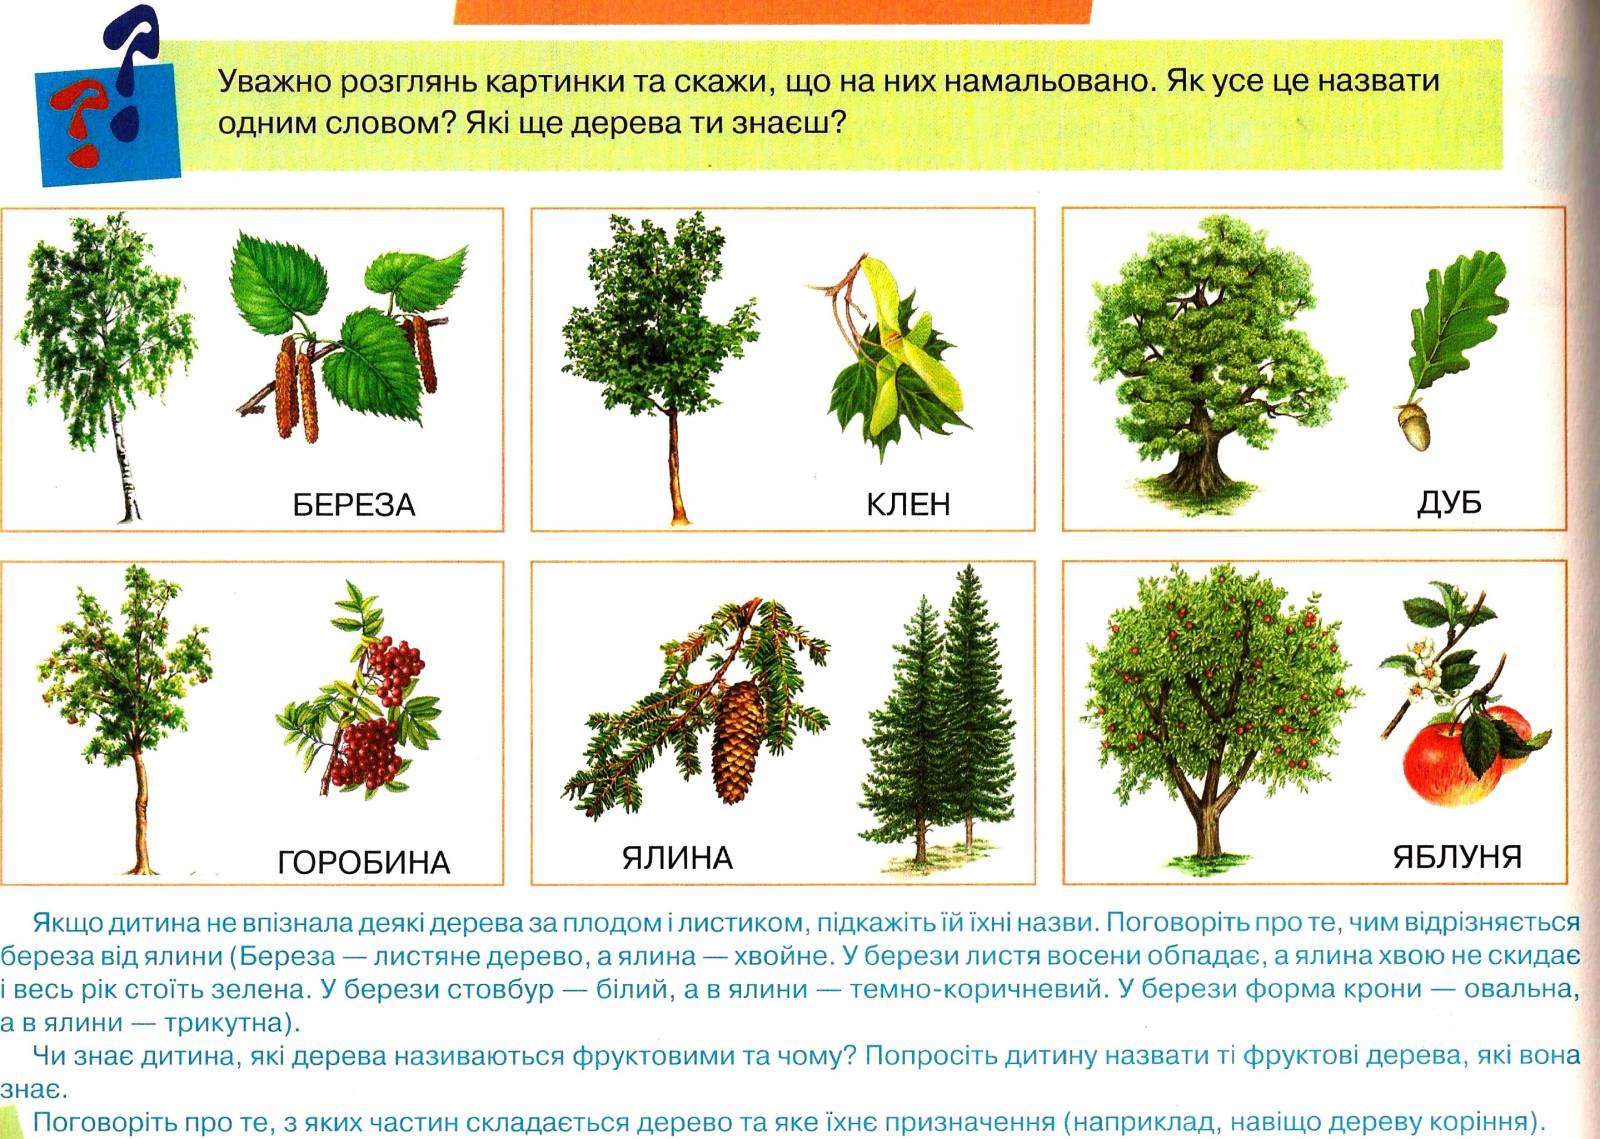 Деревья россии фото и название для детей